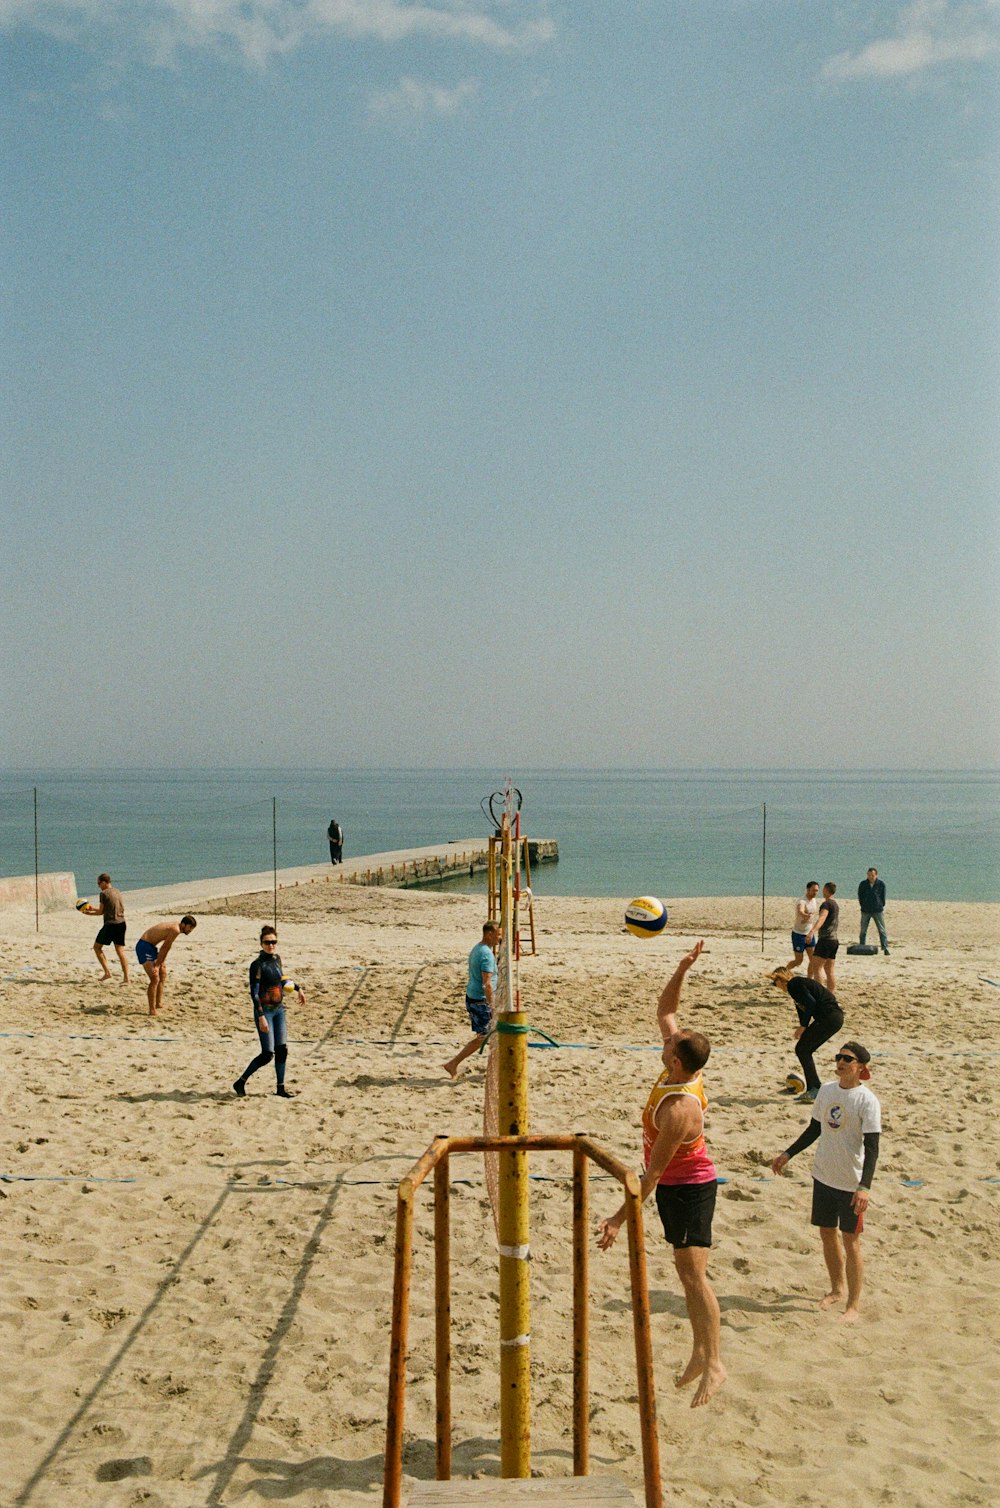 ビーチでバレーボールをする人々のグループ